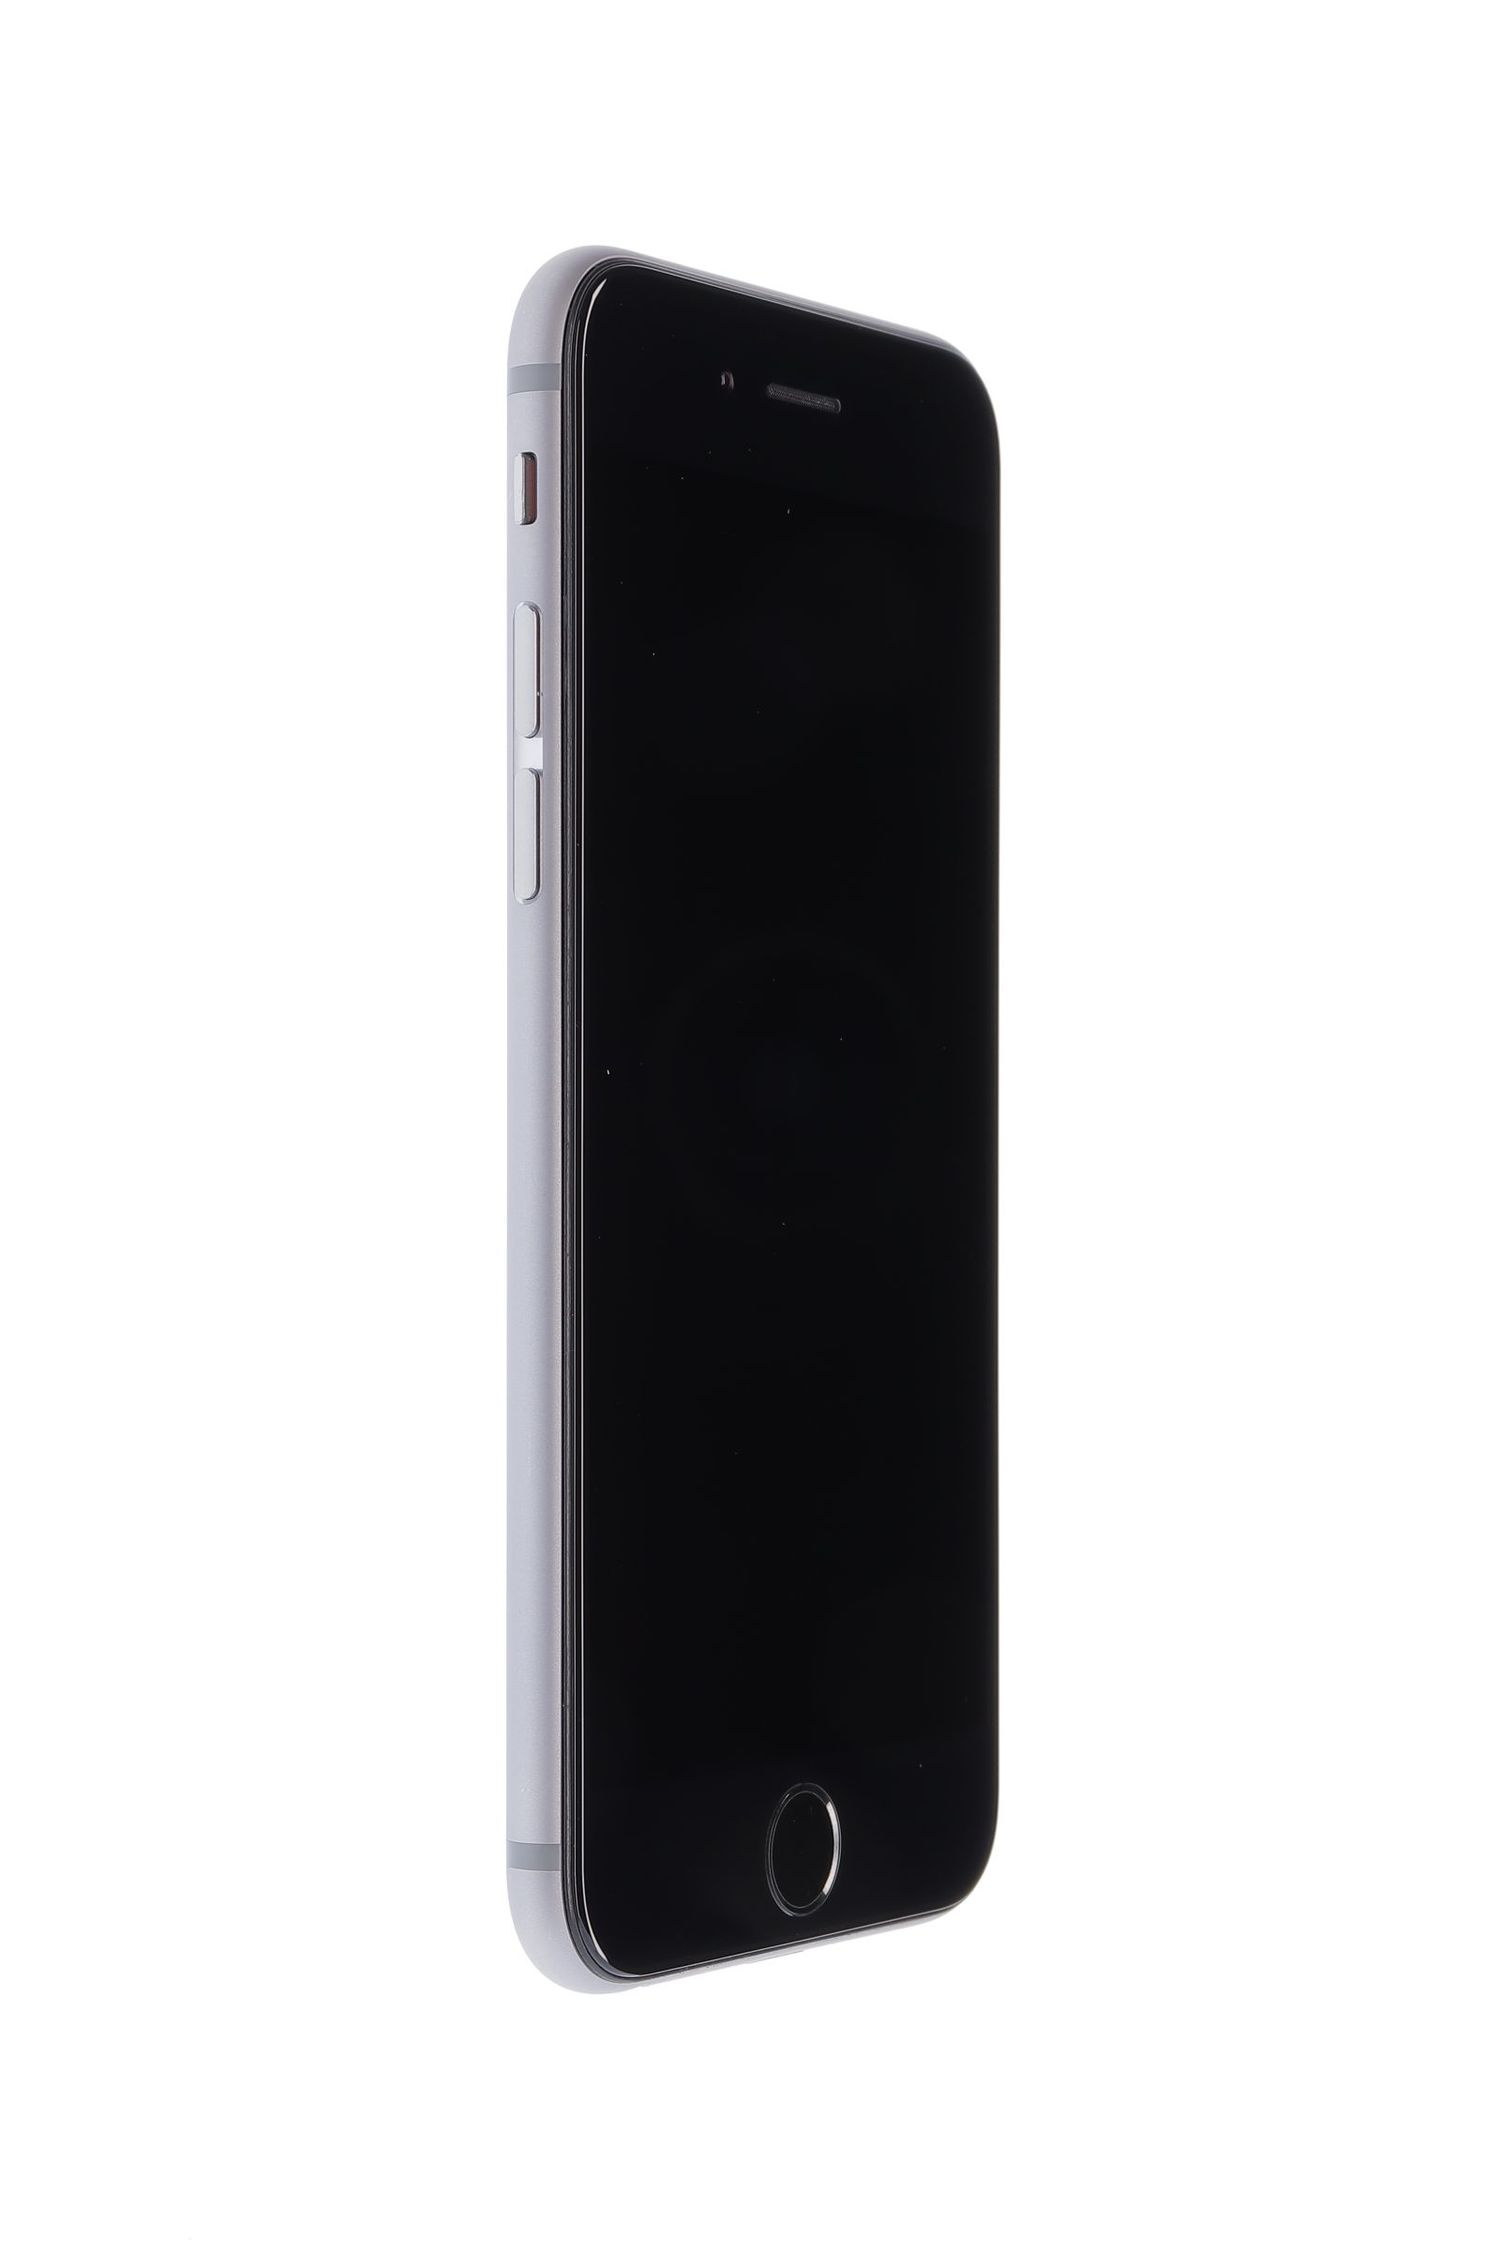 Mobiltelefon Apple iPhone 6S, Space Grey, 32 GB, Bun